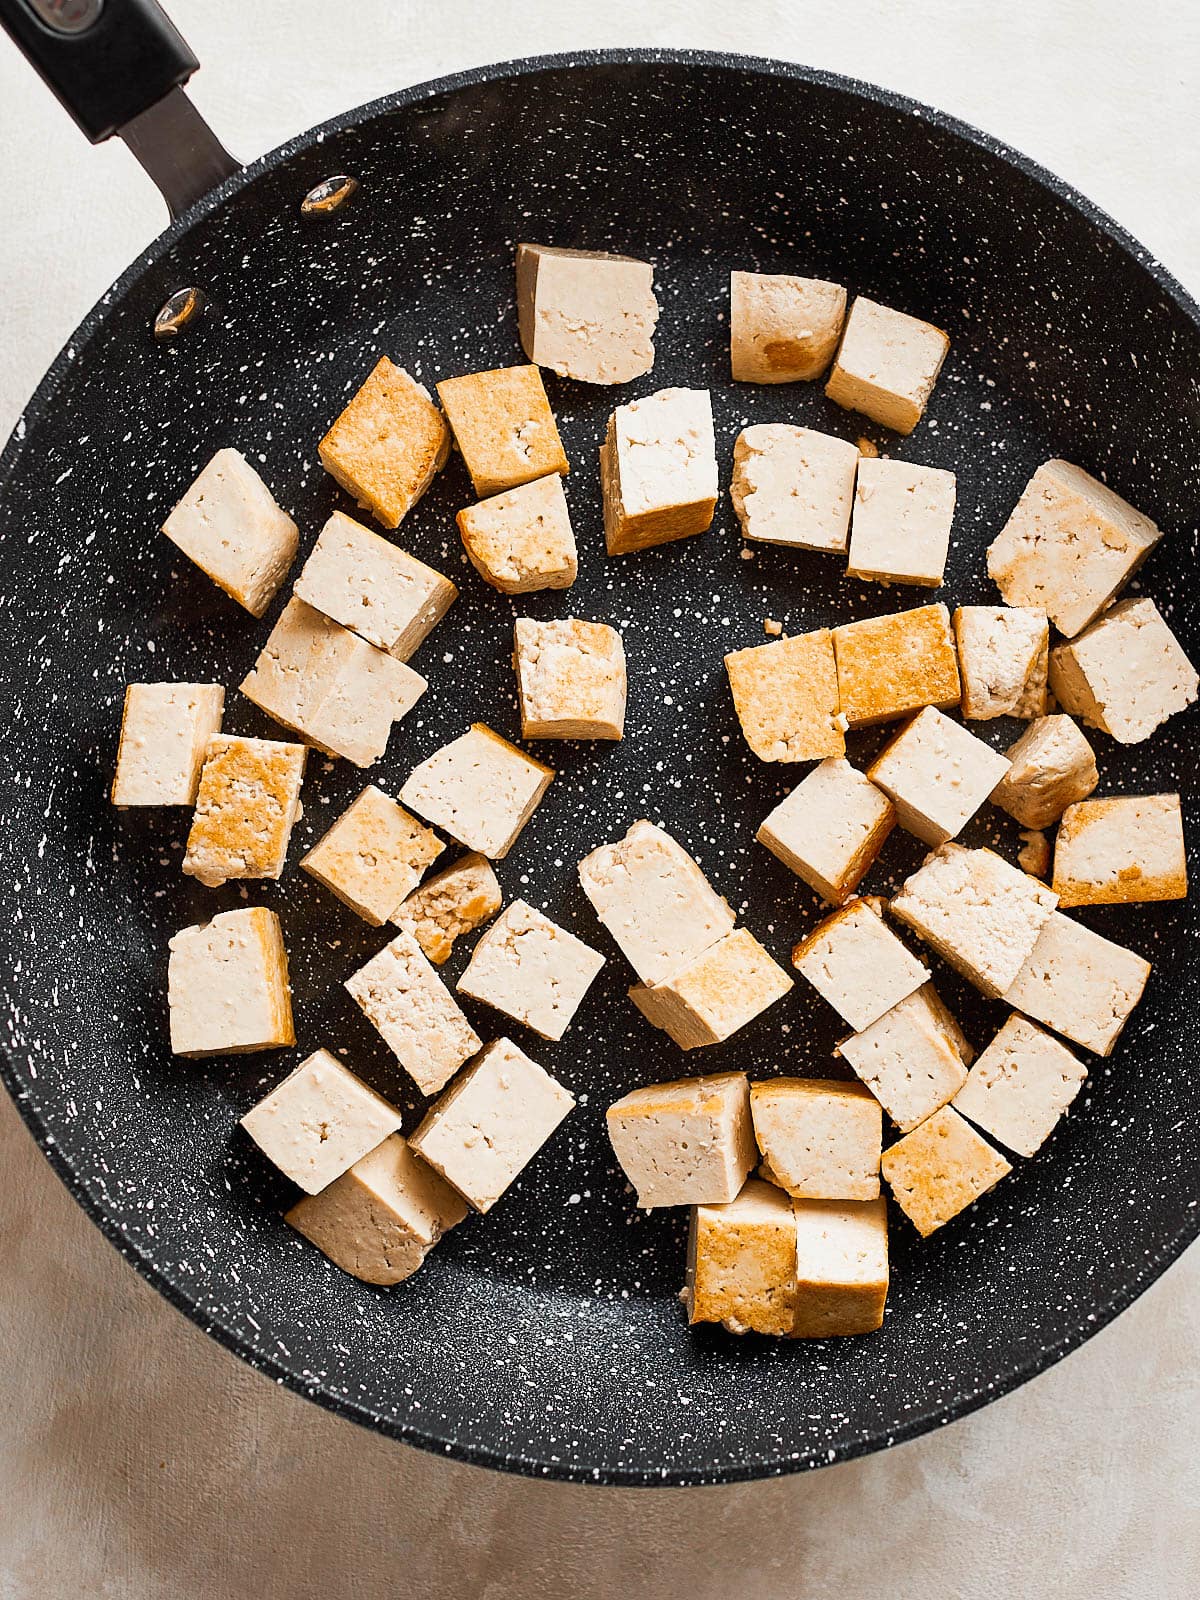 Tofu in pan beginning to go golden